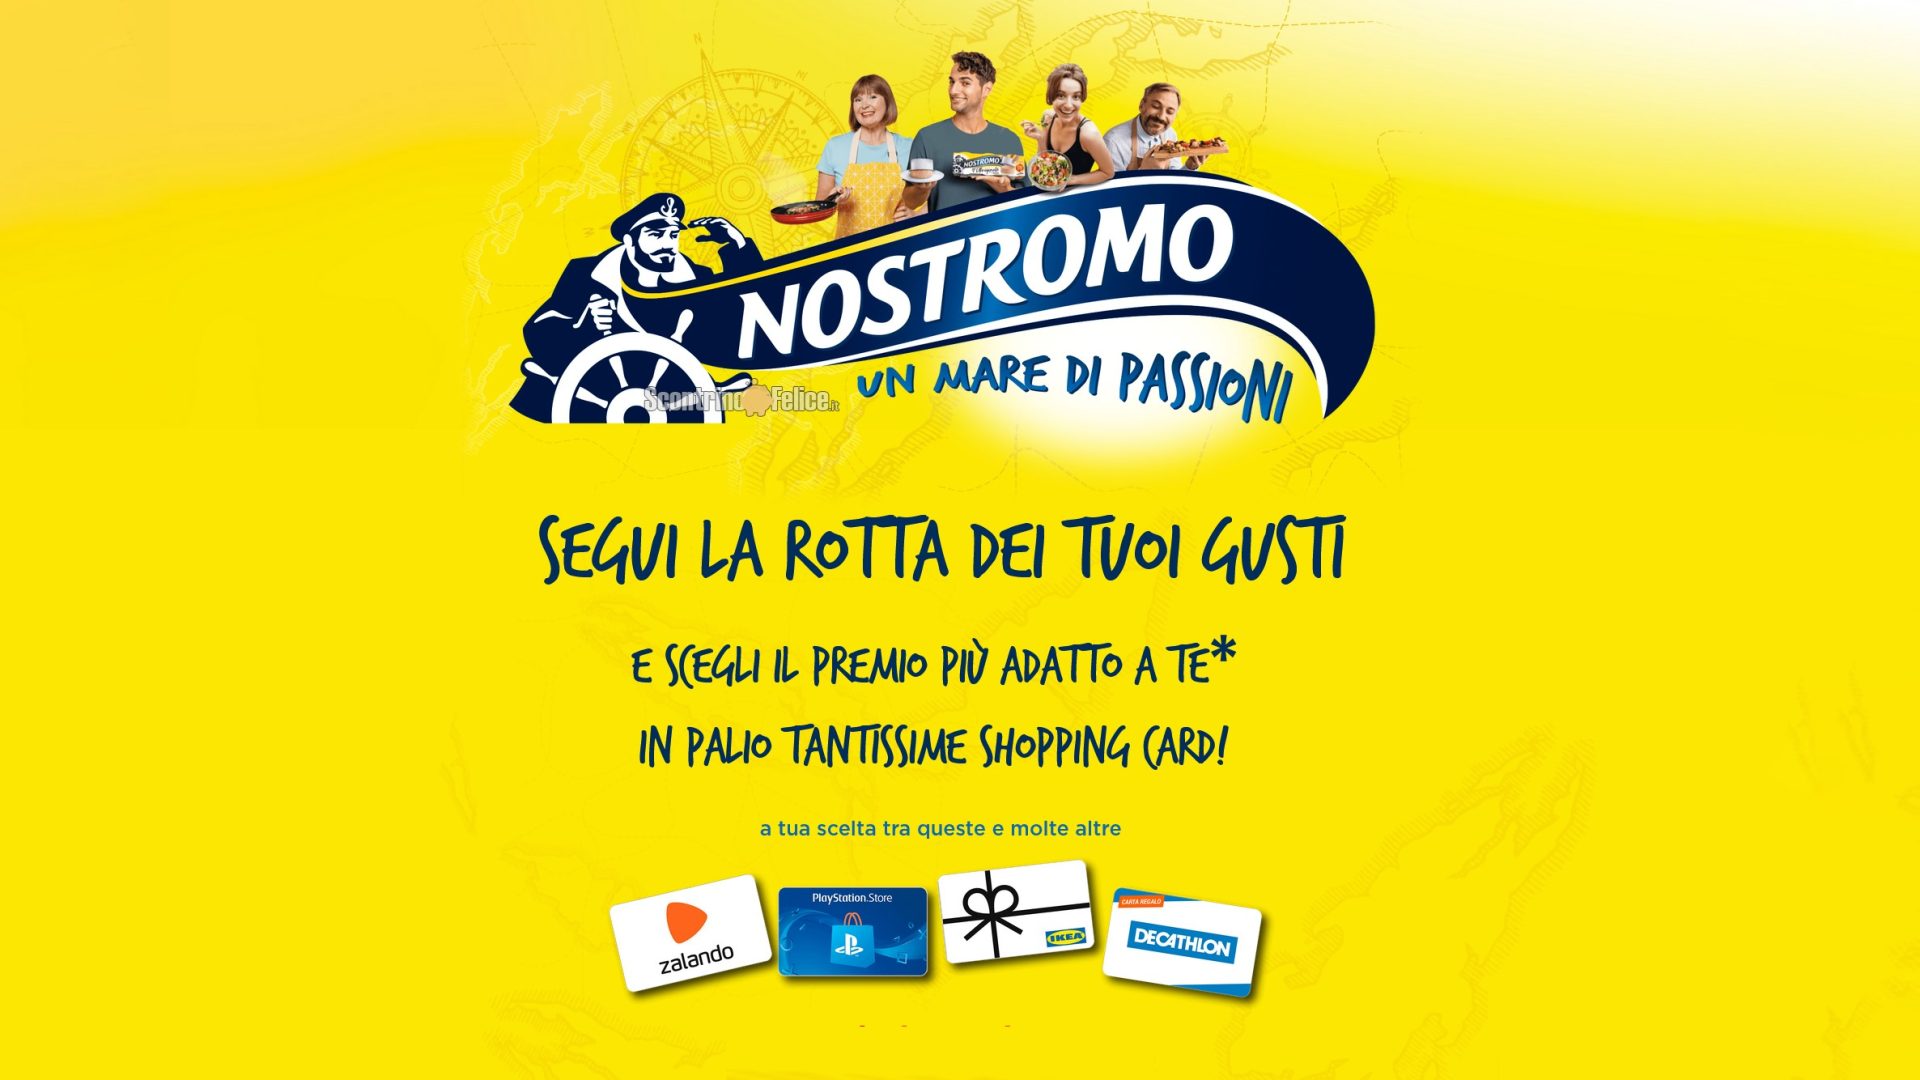 Concorso tonno Nostromo "Un mare di passioni": vinci gift card a scelta fino a 2000 euro!